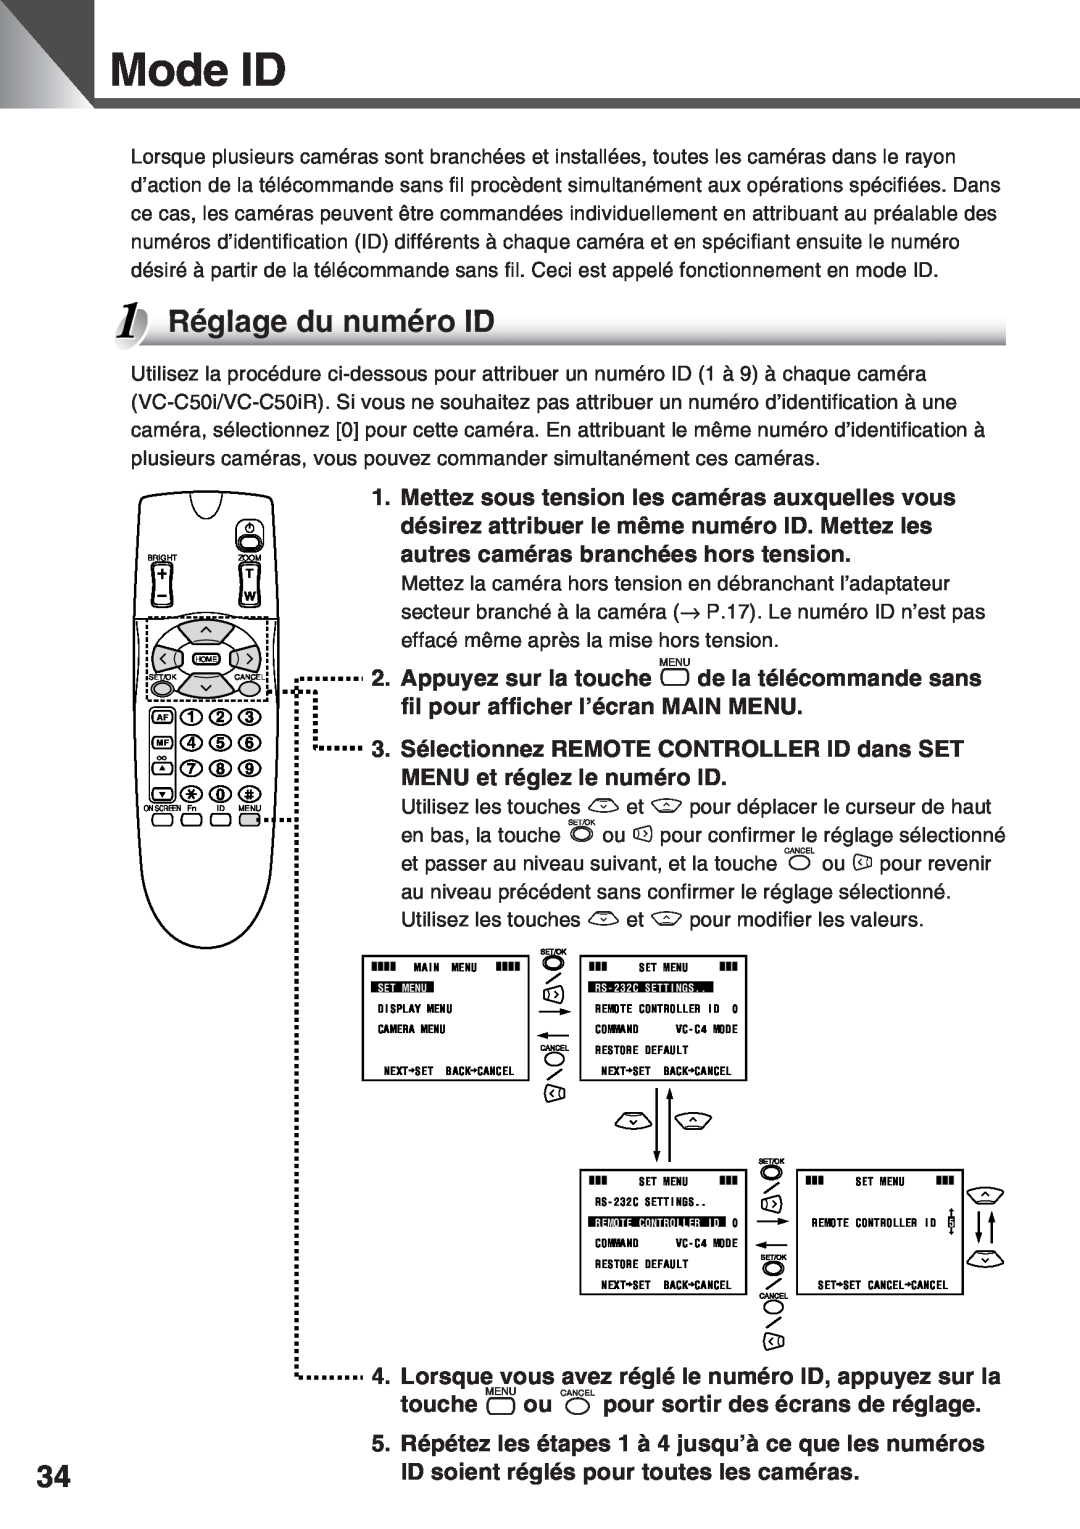 Canon VC-C50IR, VC-C50i instruction manual Mode ID, Réglage du numéro ID 